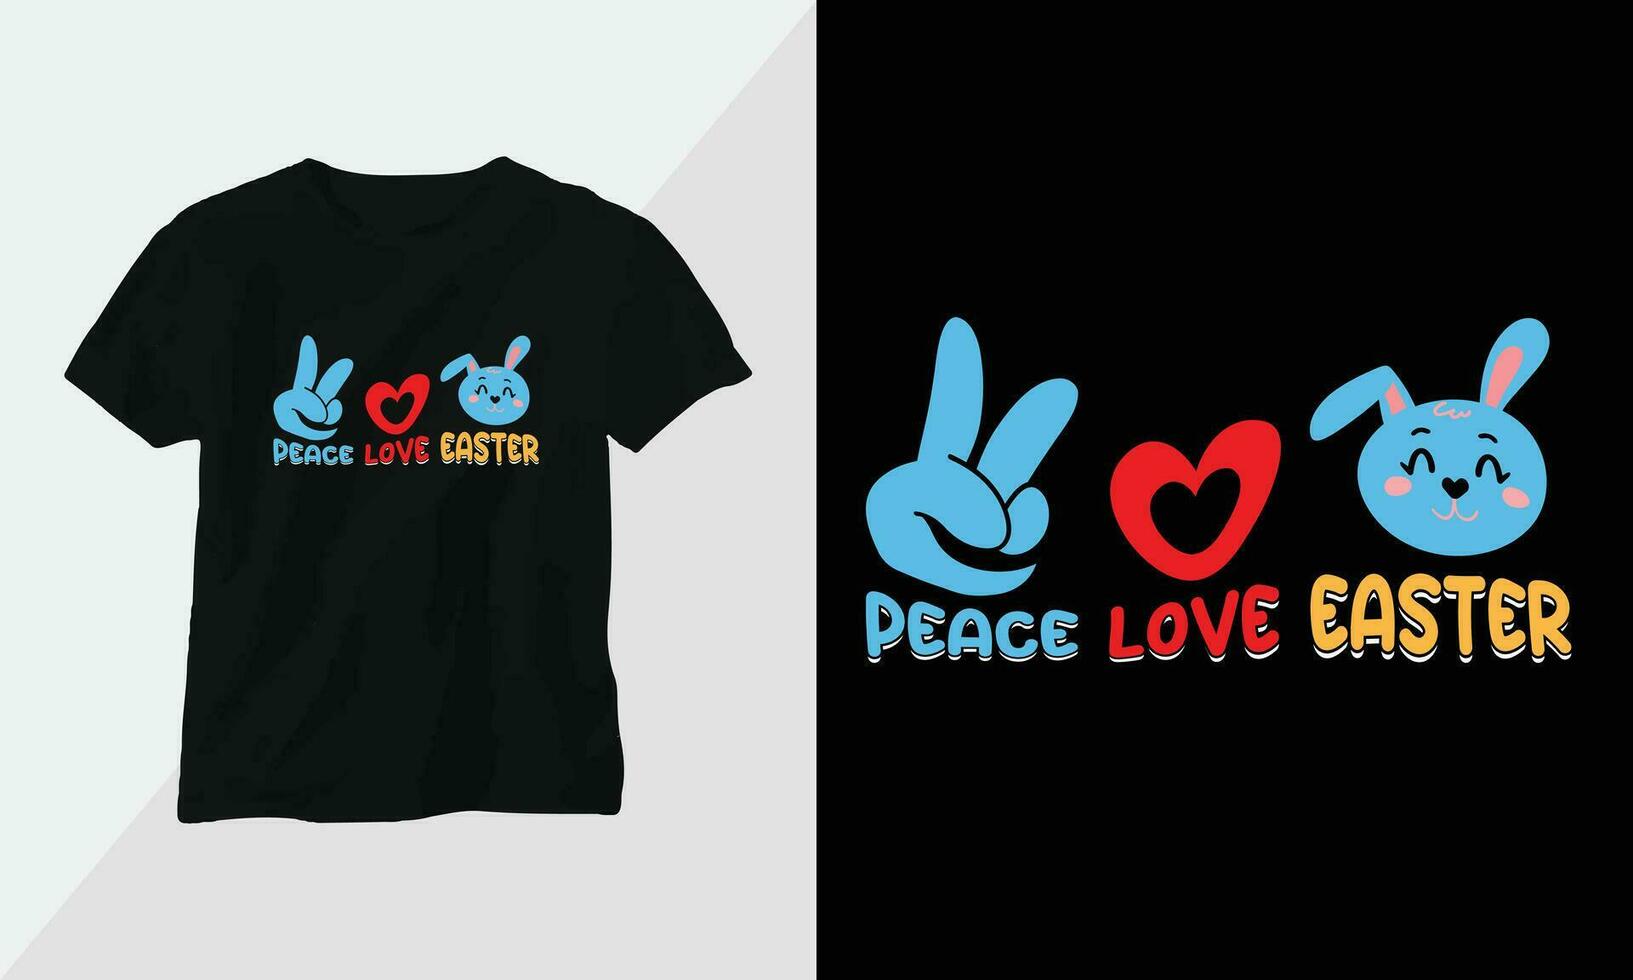 Frieden Liebe Ostern - - retro groovig inspirierend T-Shirt Design mit retro Stil vektor